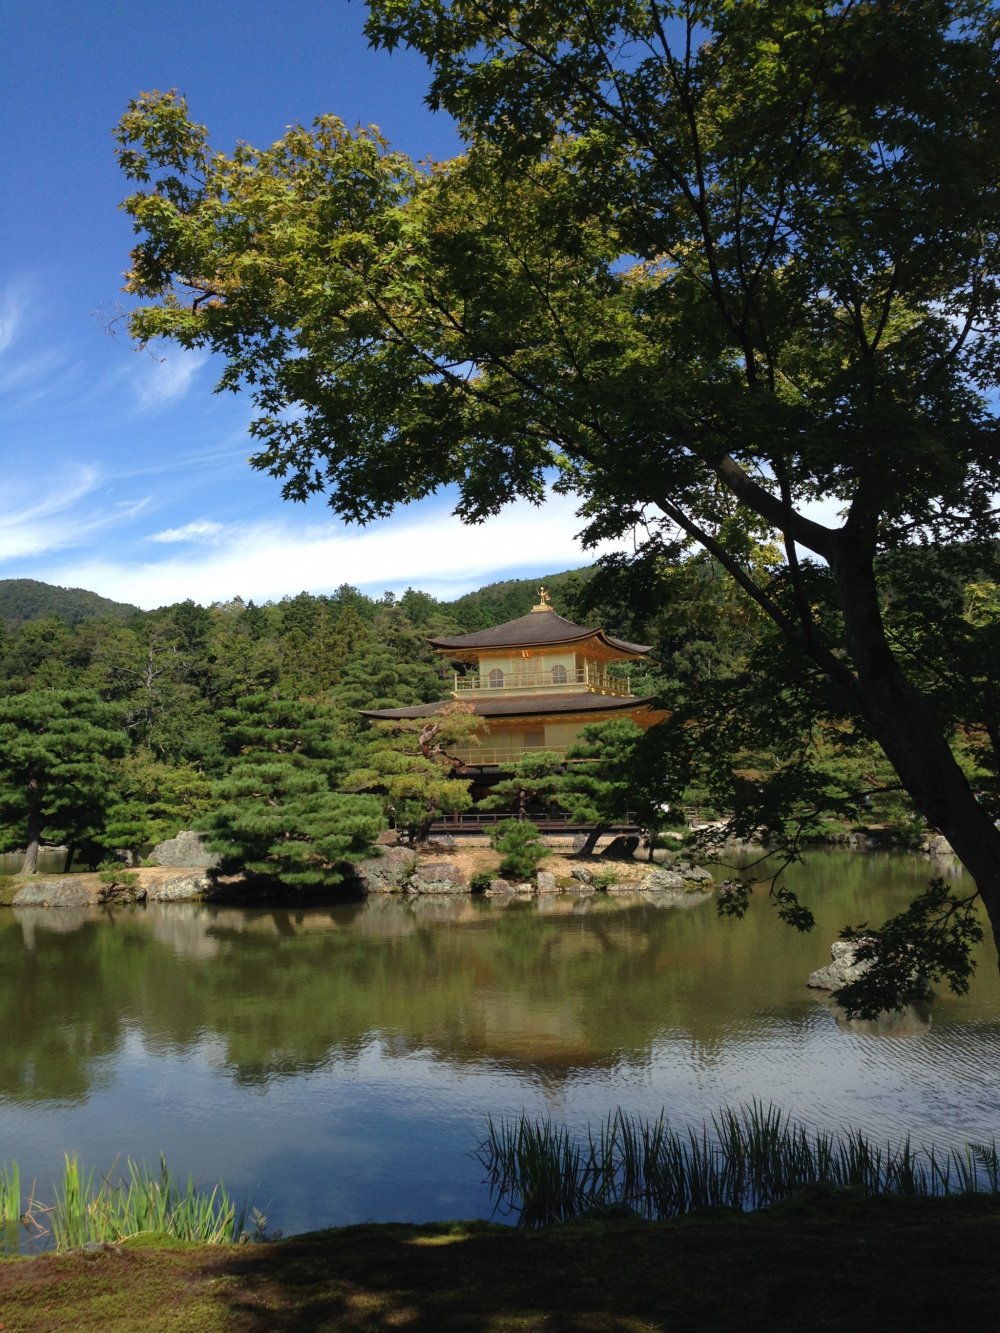 Hầu như tất cả mọi người đến thăm Kinkaku-ji dừng lại ở "điểm chụp ảnh" đầu tiên này, nhưng nếu bạn đi bộ một chút đến khu vực không có nhiều người, bạn cũng có thể chụp được một bức ảnh đẹp!